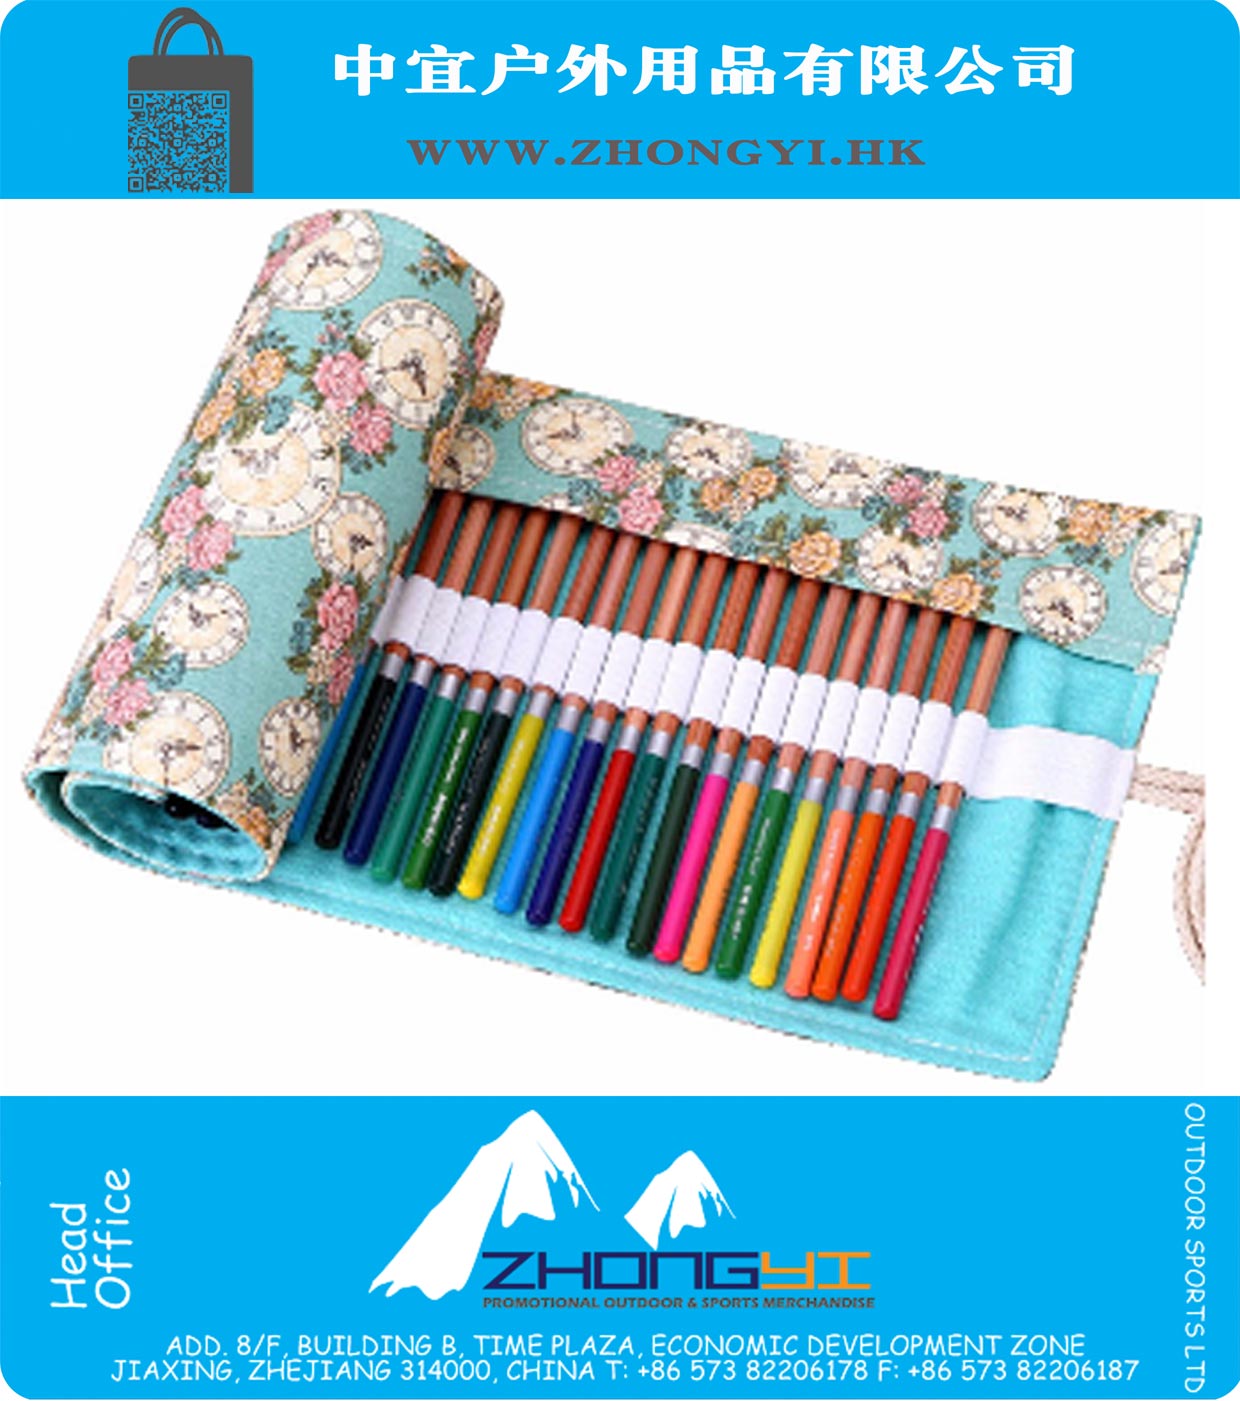 Handmade-Bleistift-Kasten 36 Holes Rolle Bleistift-Kasten-Schule Geschenk-Kunst Creation Frauen-Mädchen-Taschen